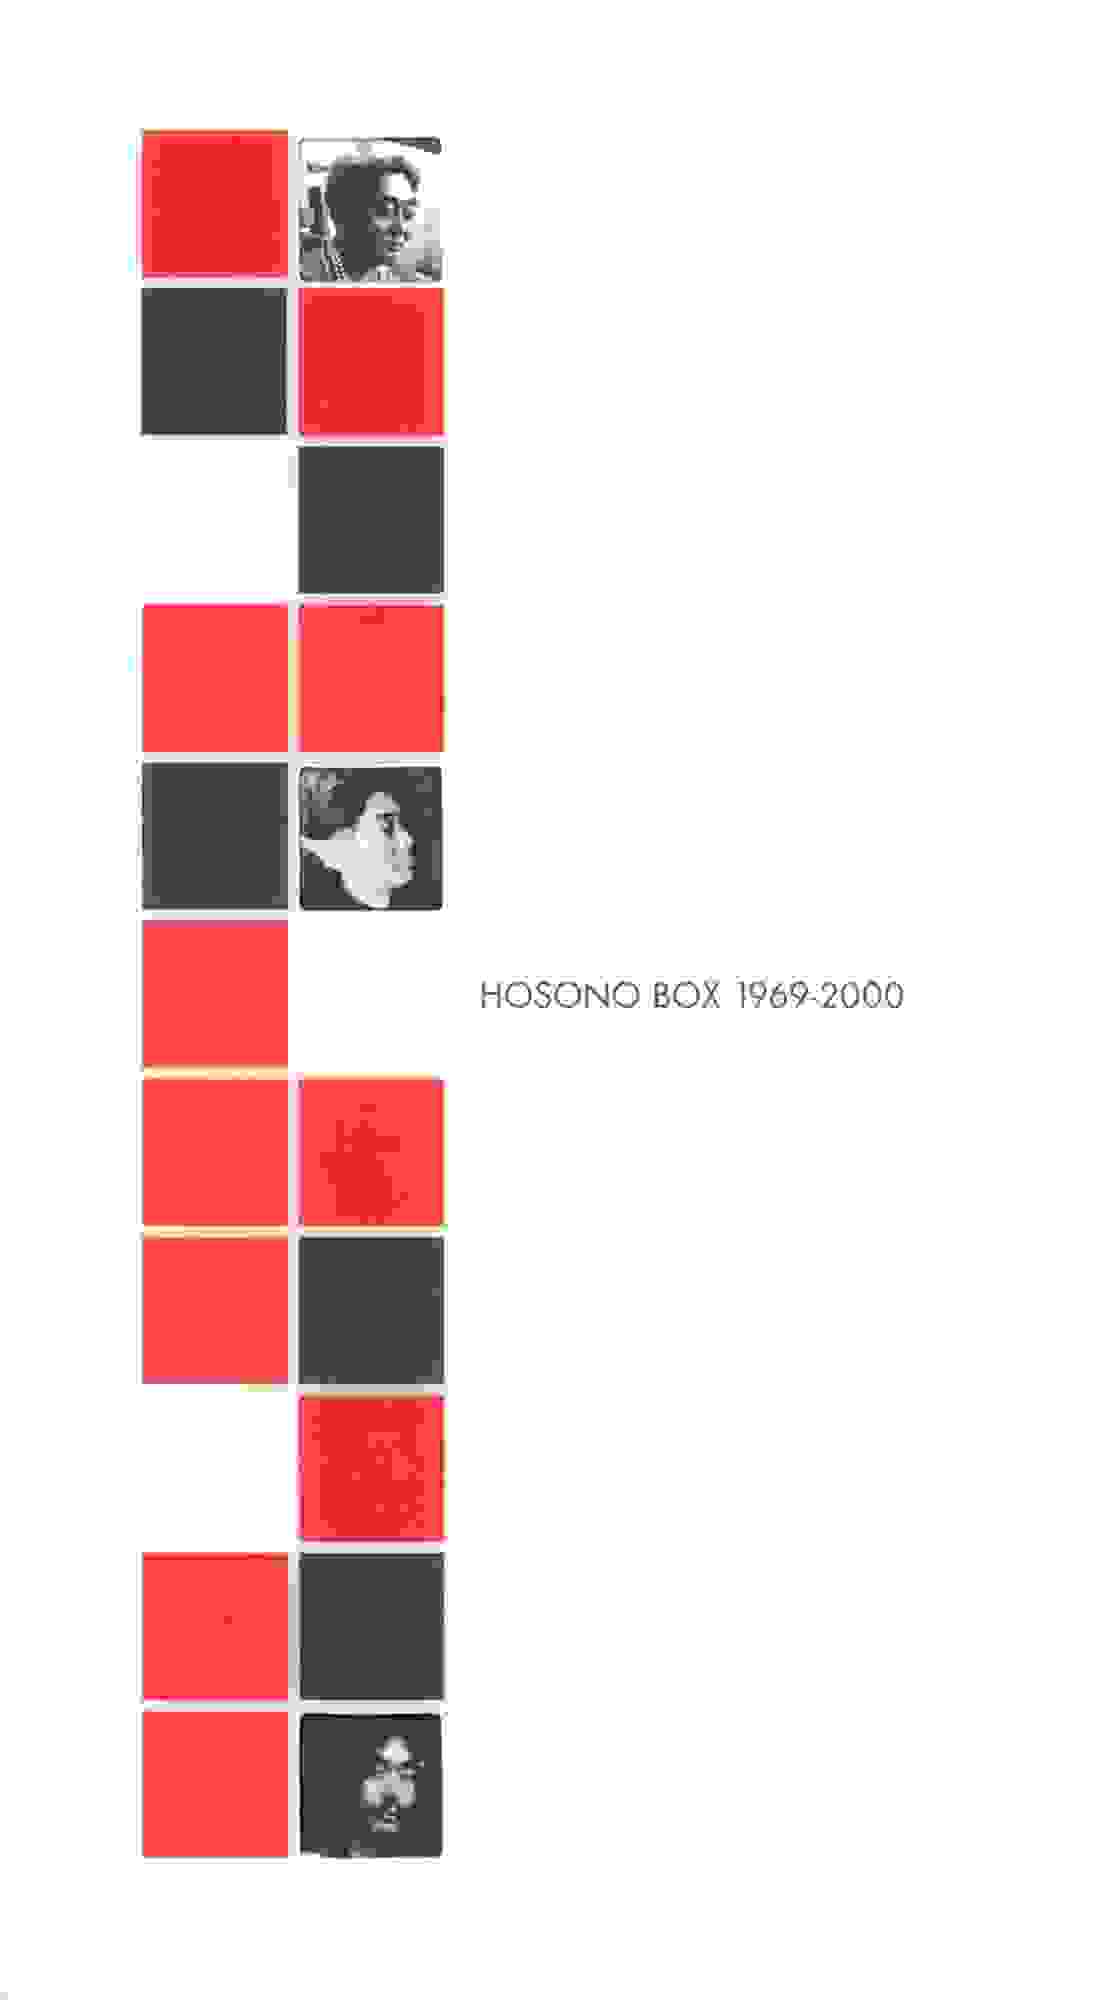 [細野晴臣][2000.03.23]HOSONO BOX 1969-2000_结果.jpg